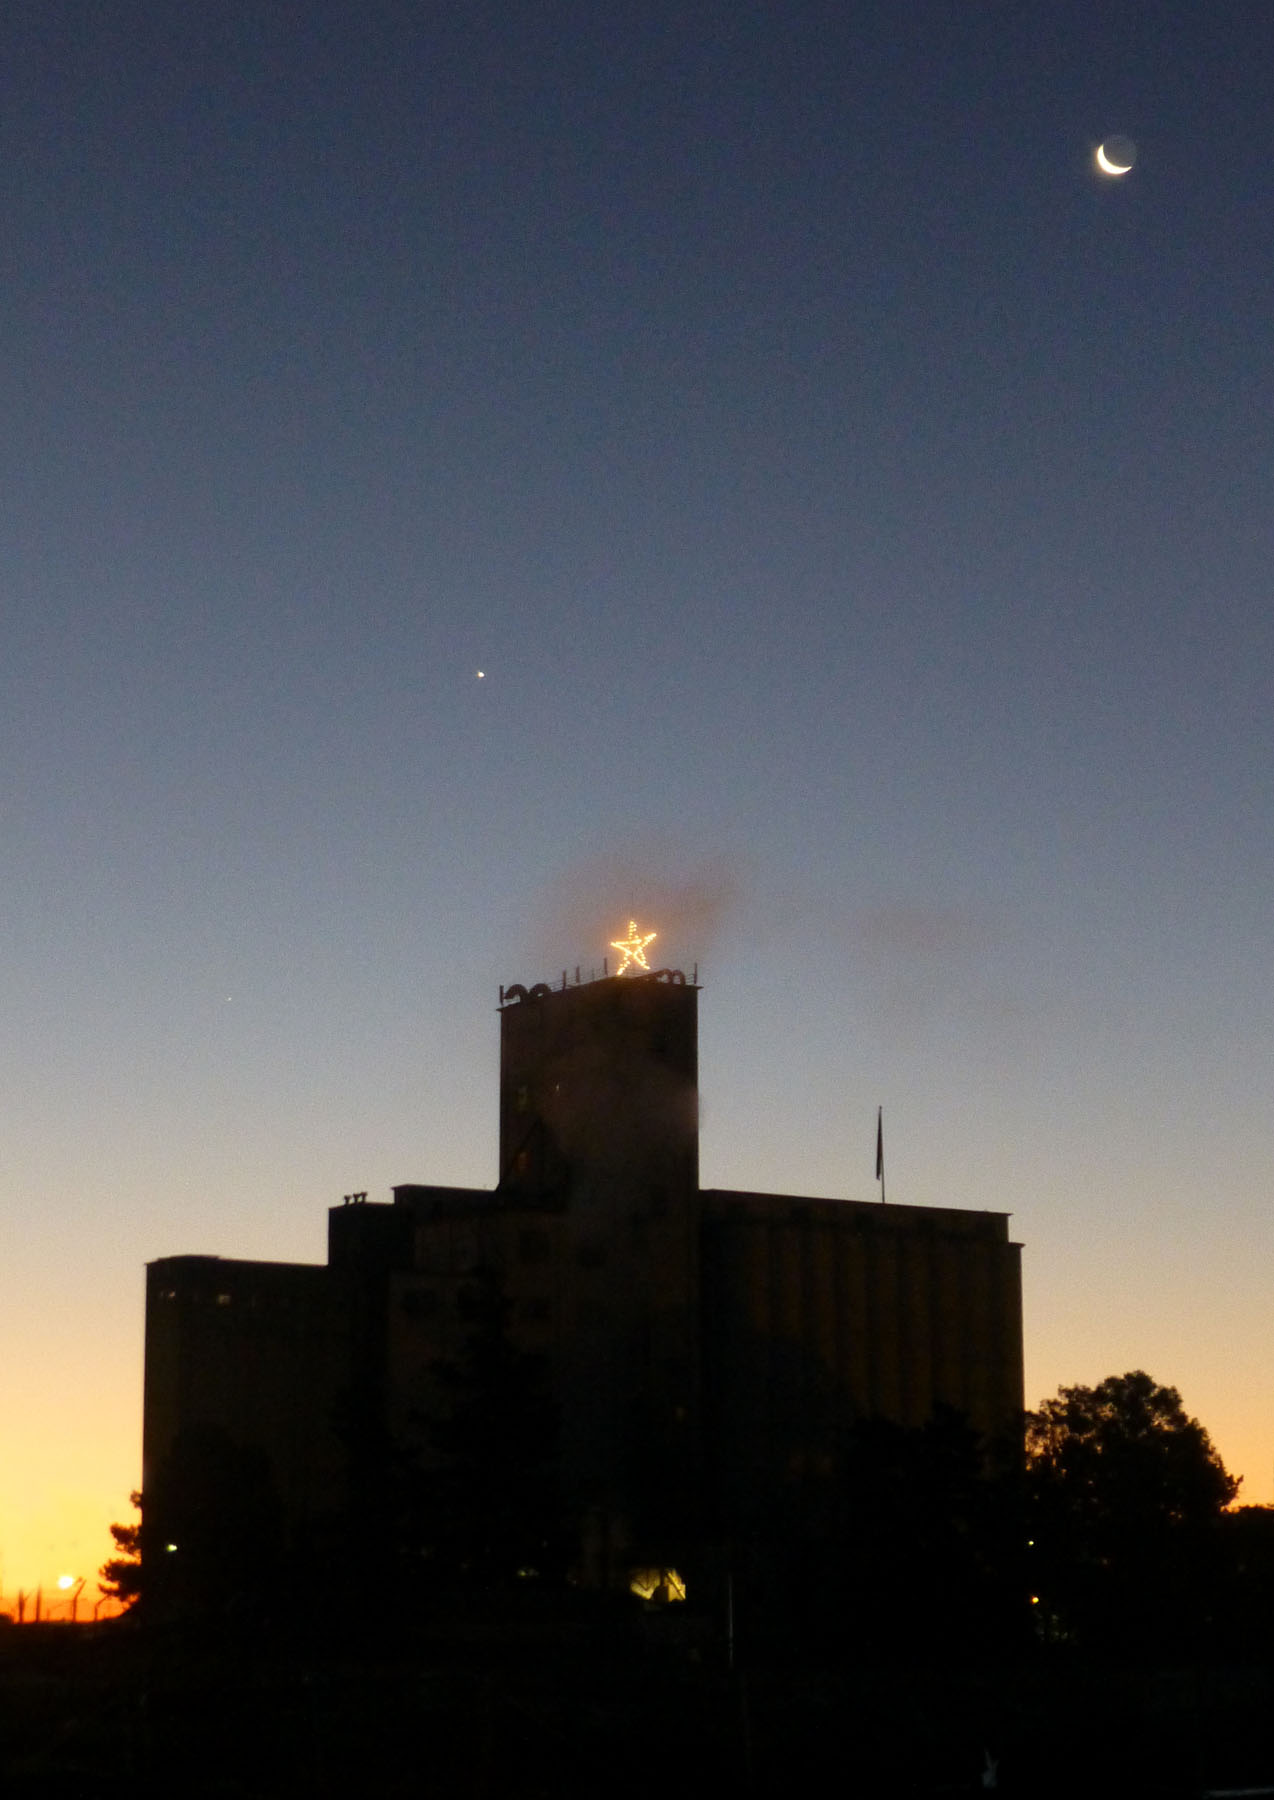 Petaluma Sunrise with the moon and Venus